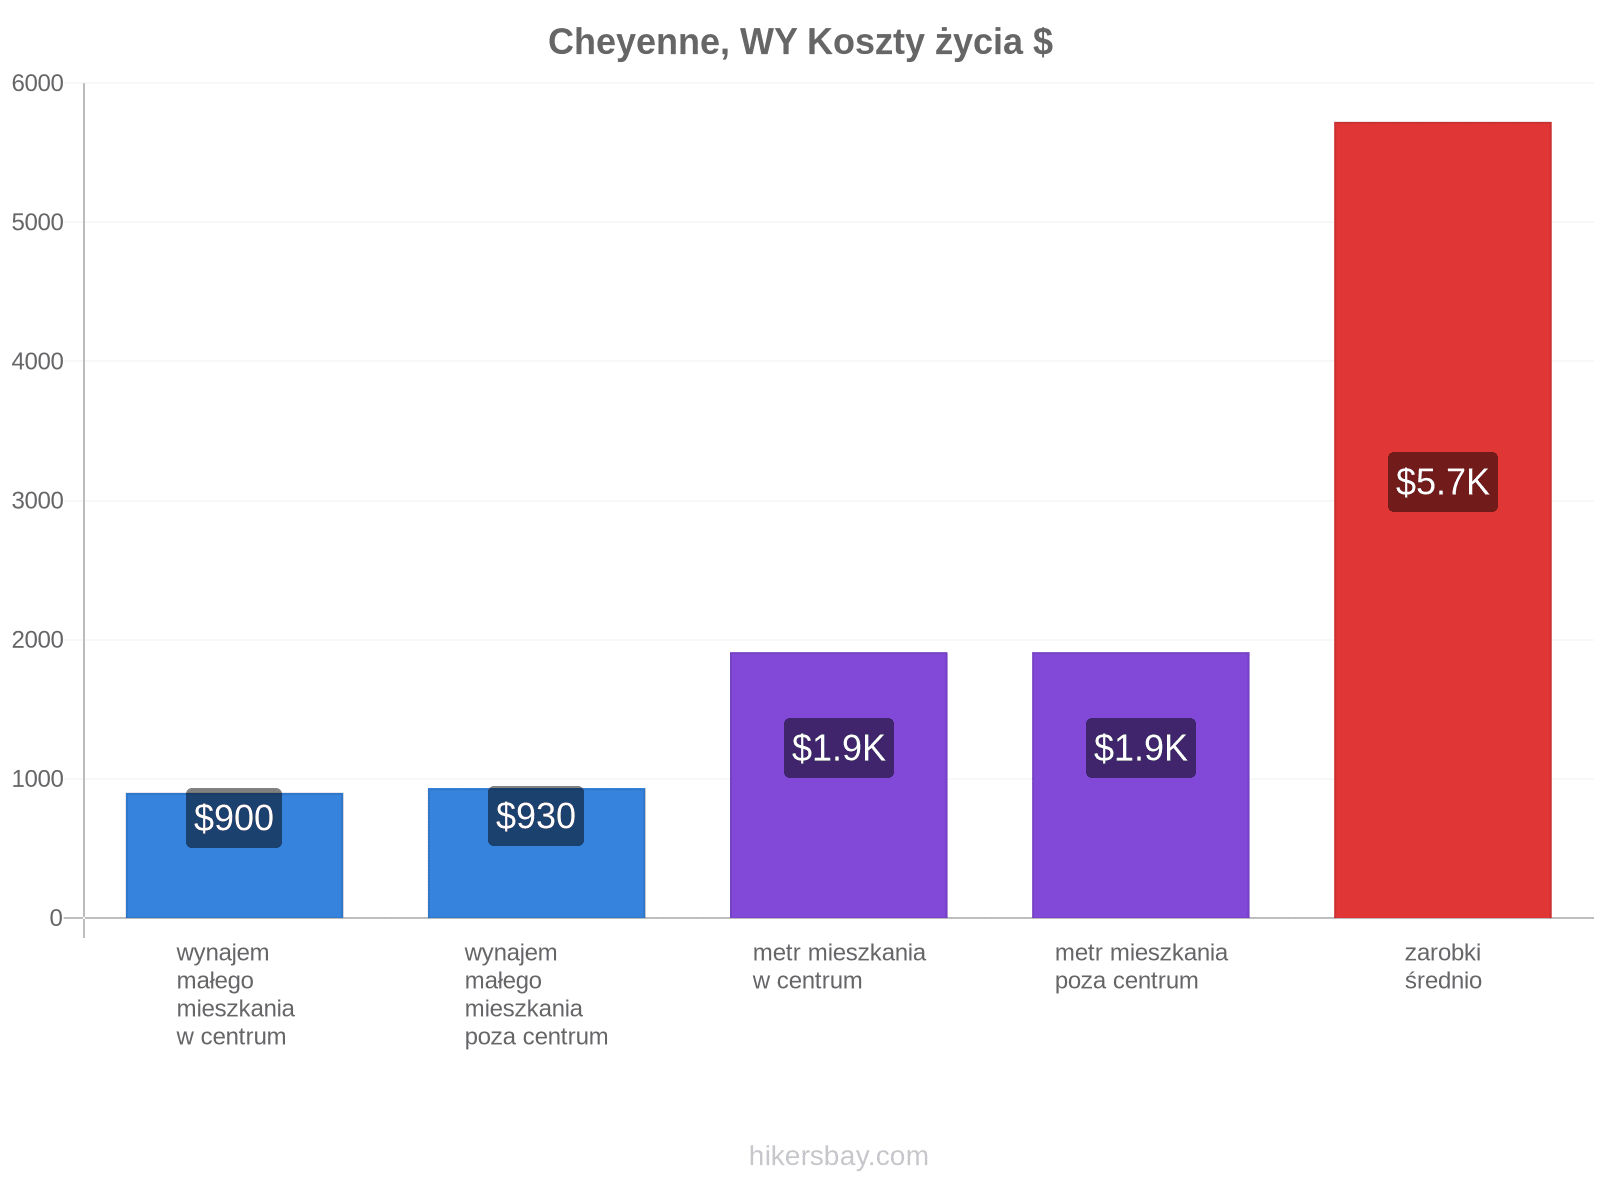 Cheyenne, WY koszty życia hikersbay.com